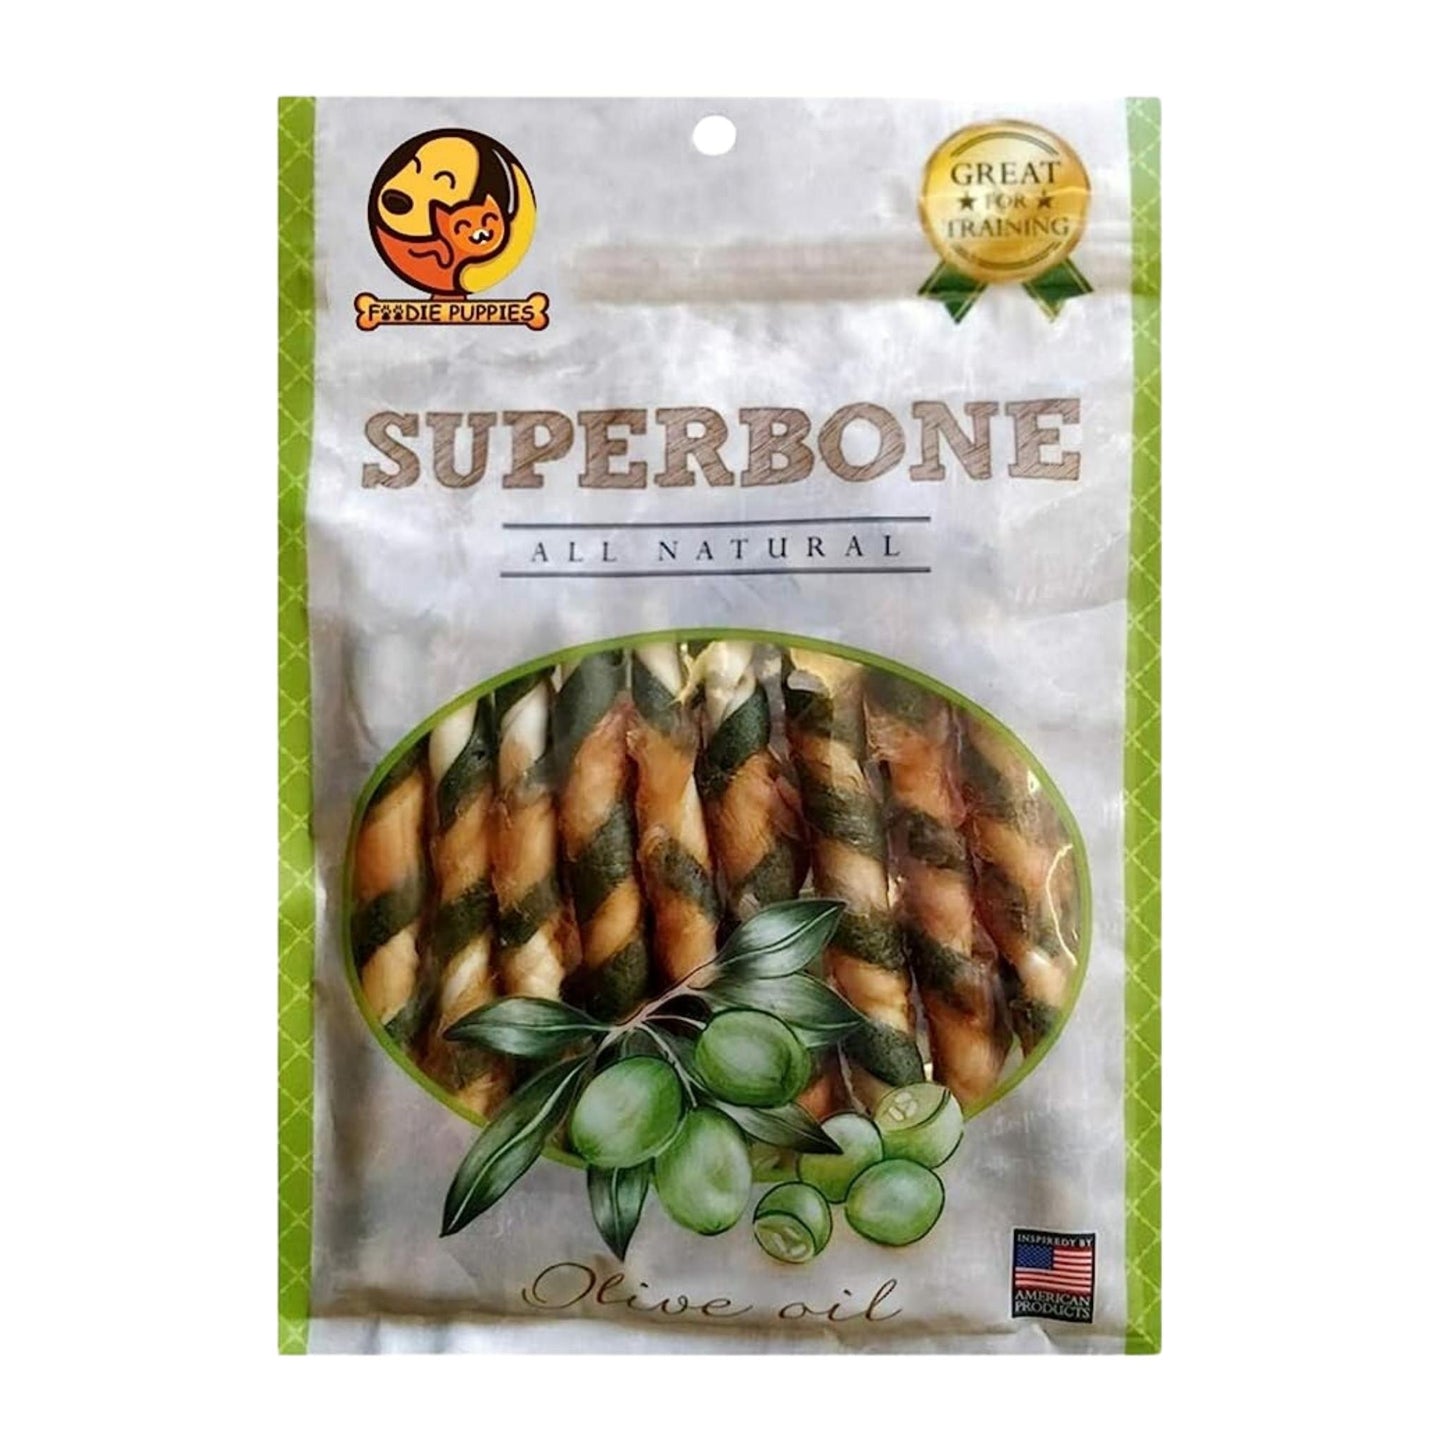 SuperBone All Natural Olive Oil Stick Dog Treat - Pack of 1